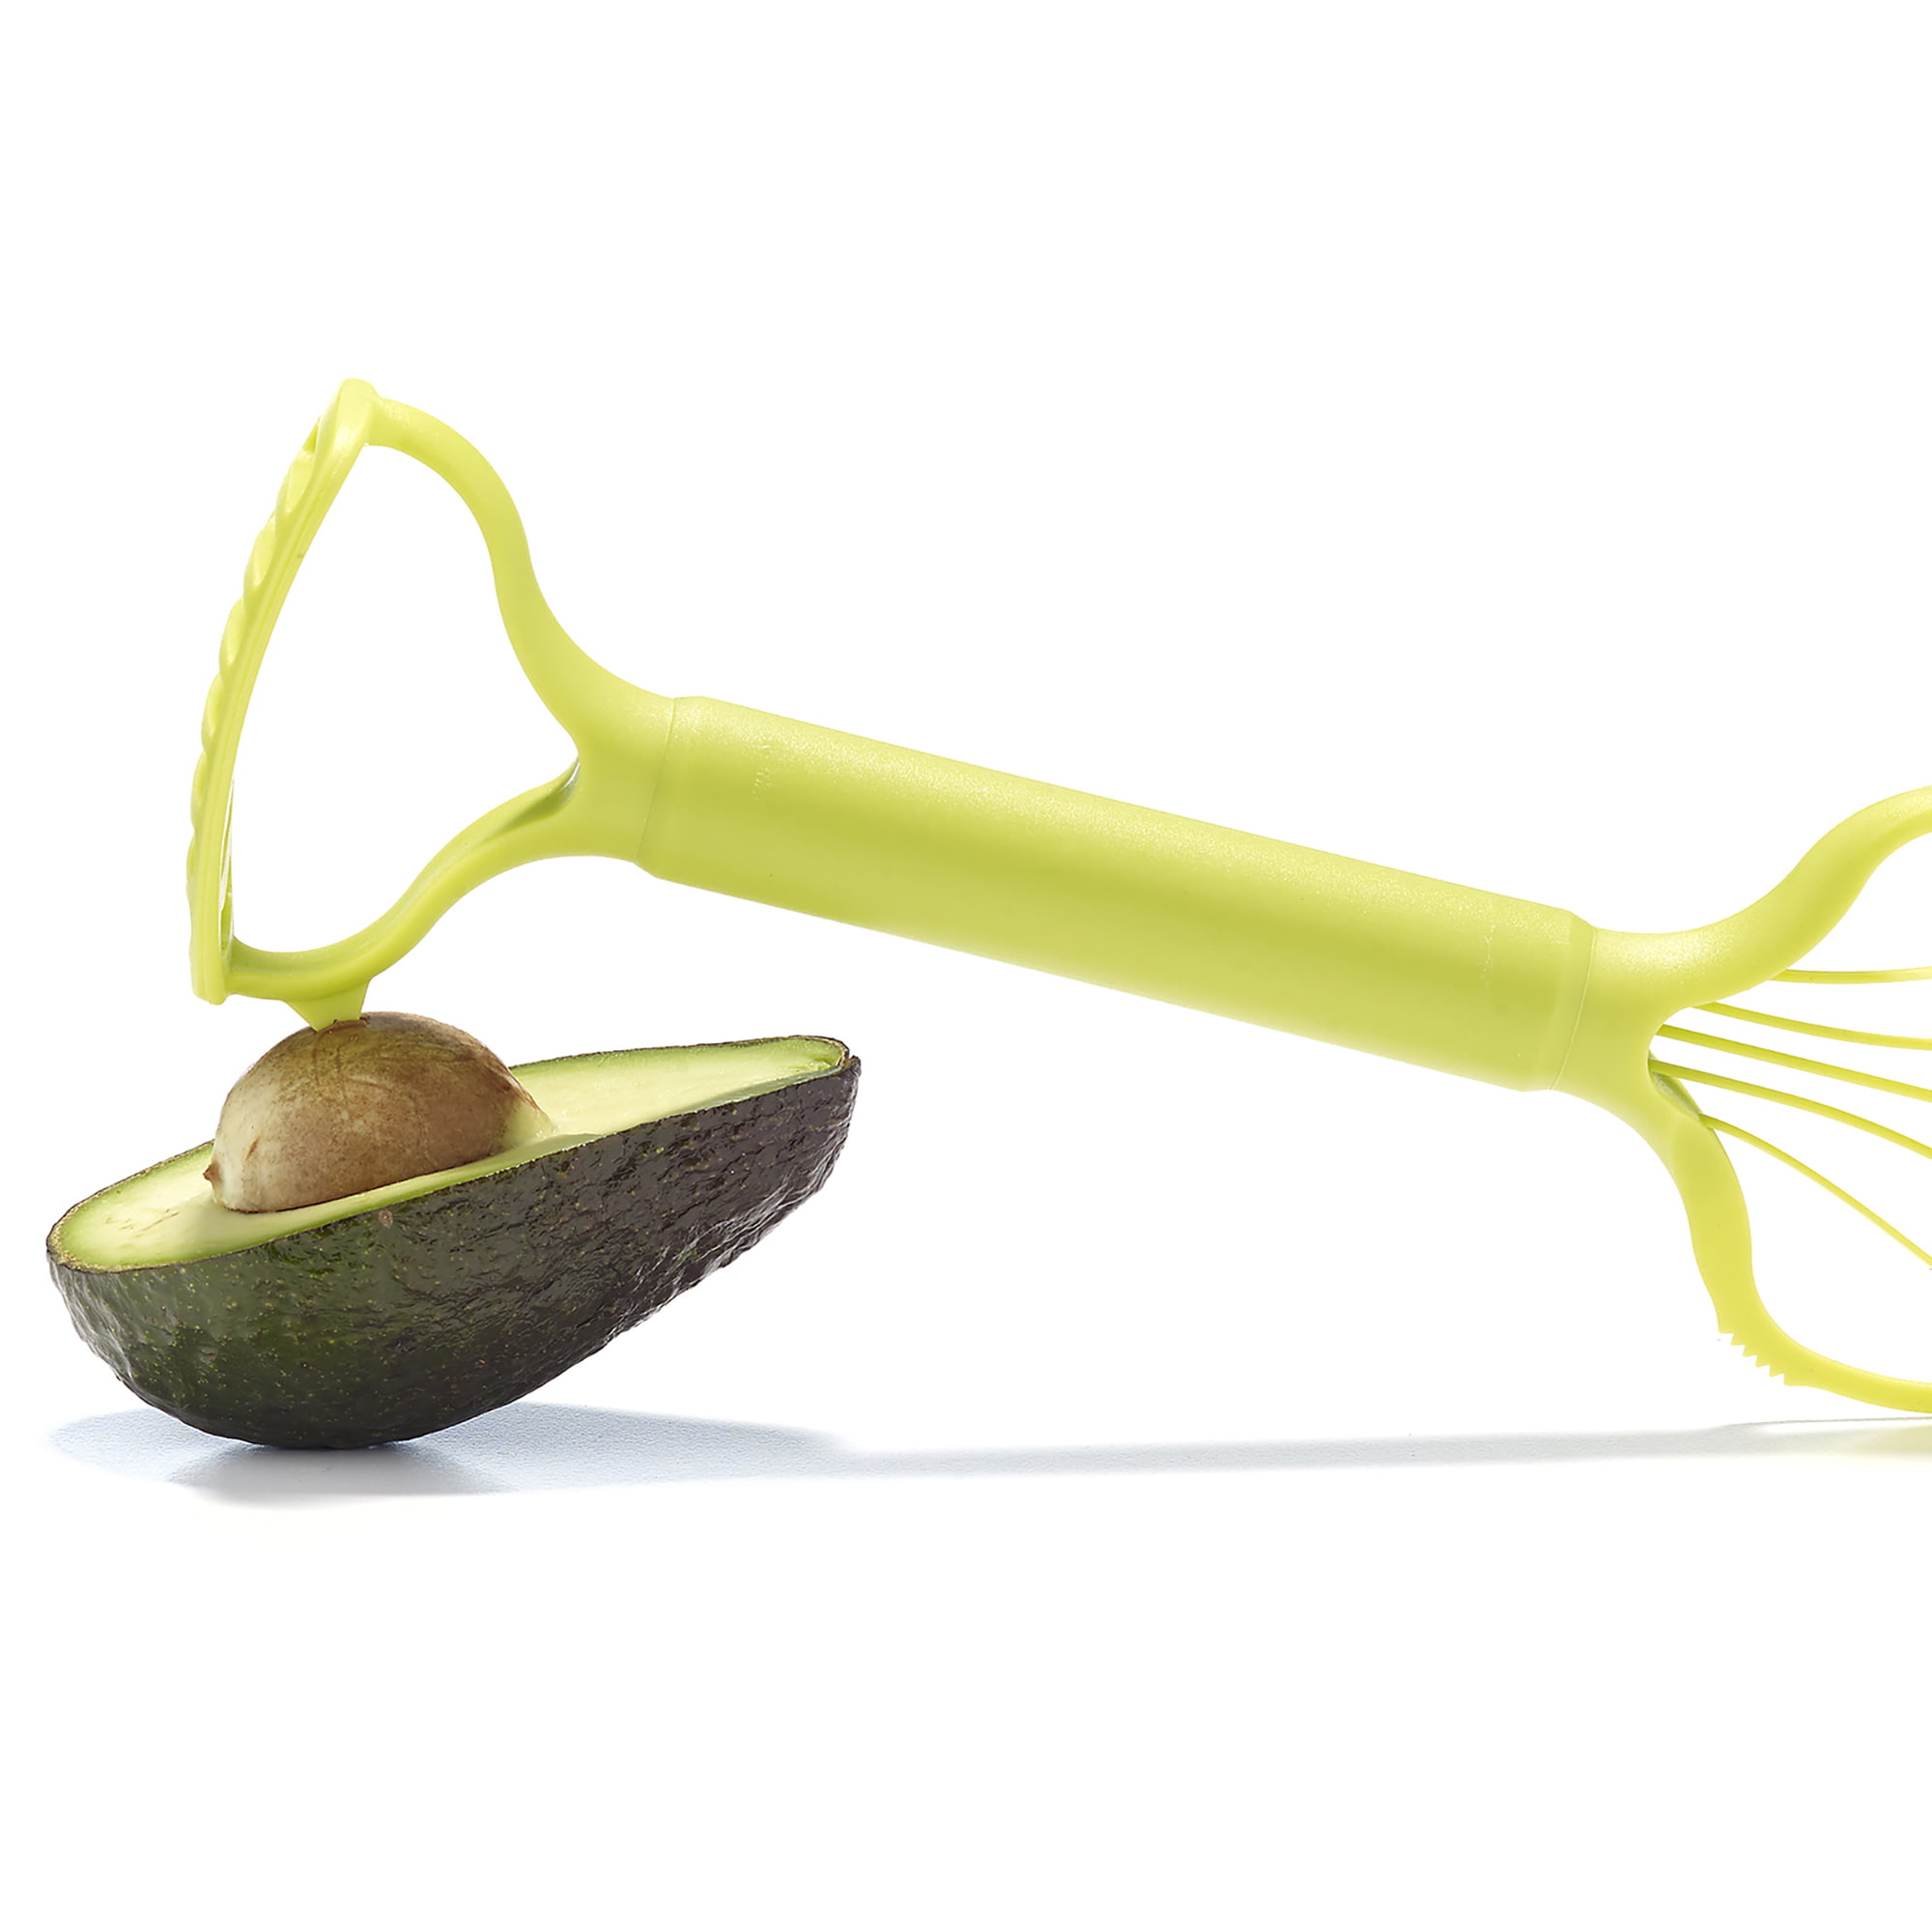 pelapatate 4 in 1 e Tritatutto per Avocado in ABS Ecologico Set di Strumenti ergonomici per Avocado per Mango Kiwi Confezione da 2 EQLEF Avocado Coltello 